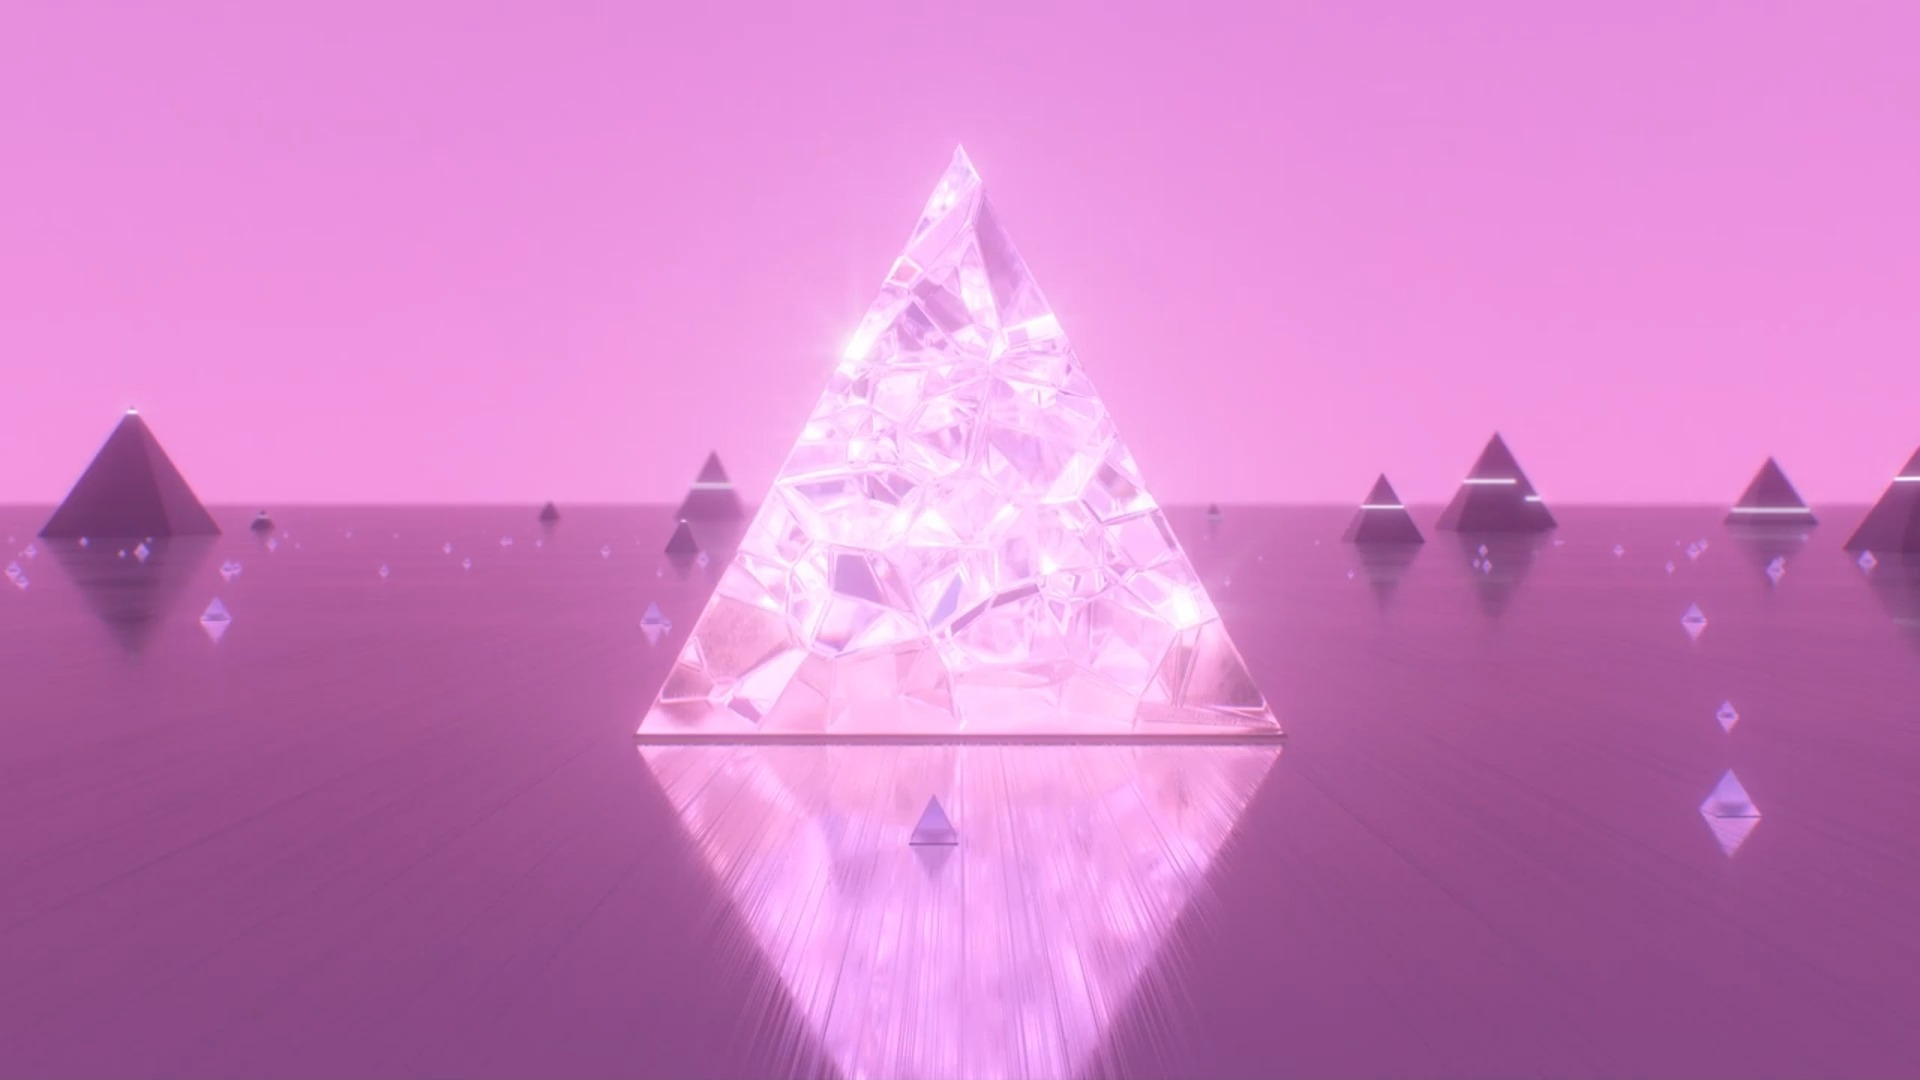 【舞台背景】5分钟的粉色水晶三角锥动画❤️ 浪漫梦幻舞蹈晚会年会循环动画